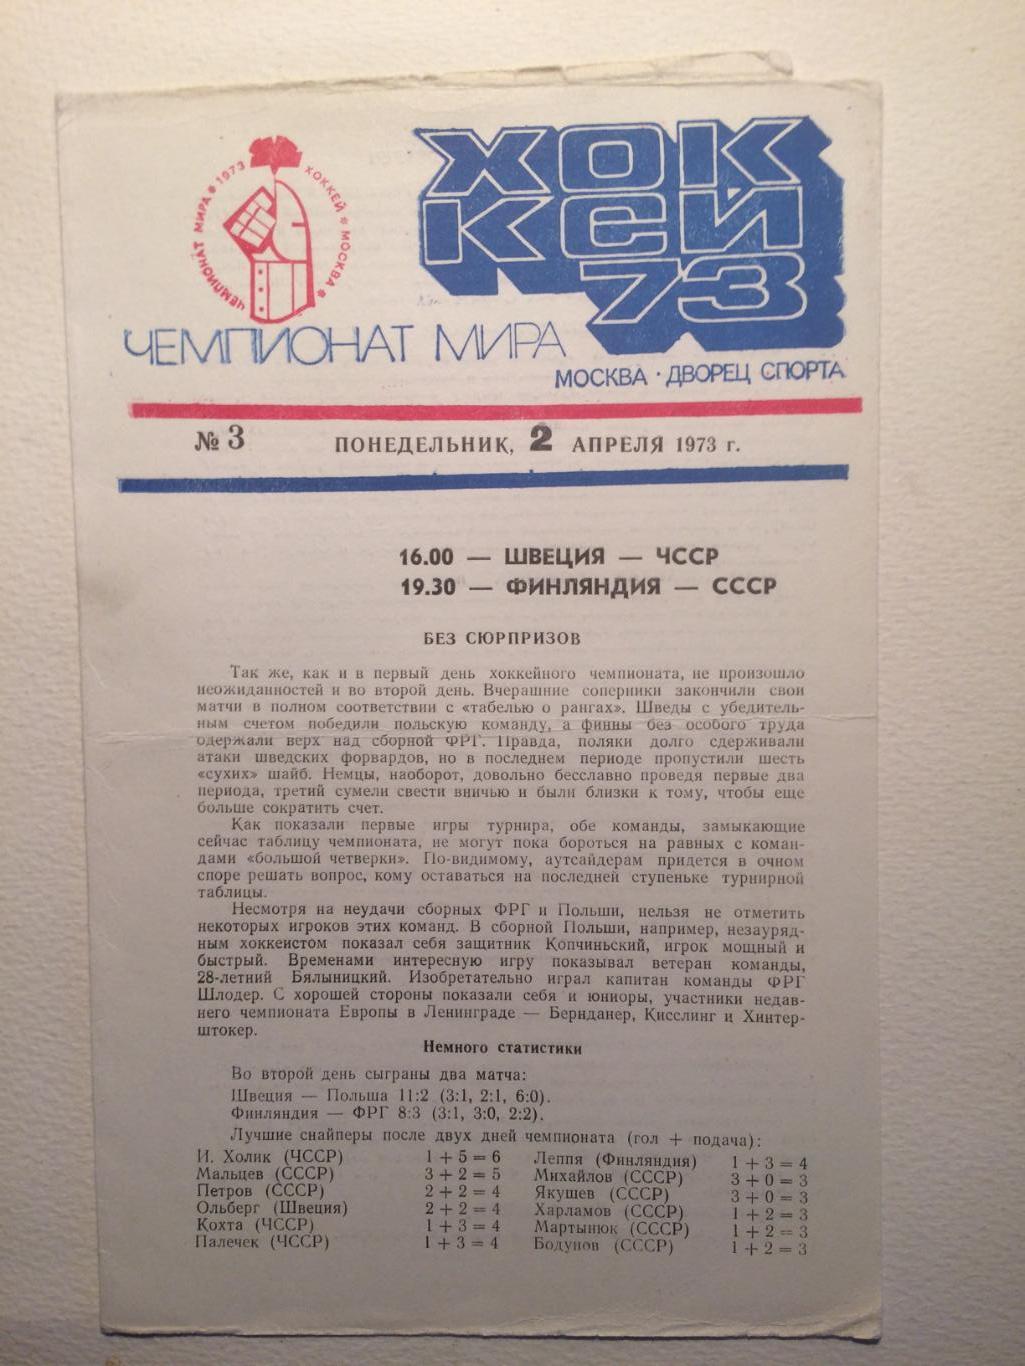 Чемпионат мира-1973 Финляндия-СССР,Швеция-ЧССР 02.04.1973